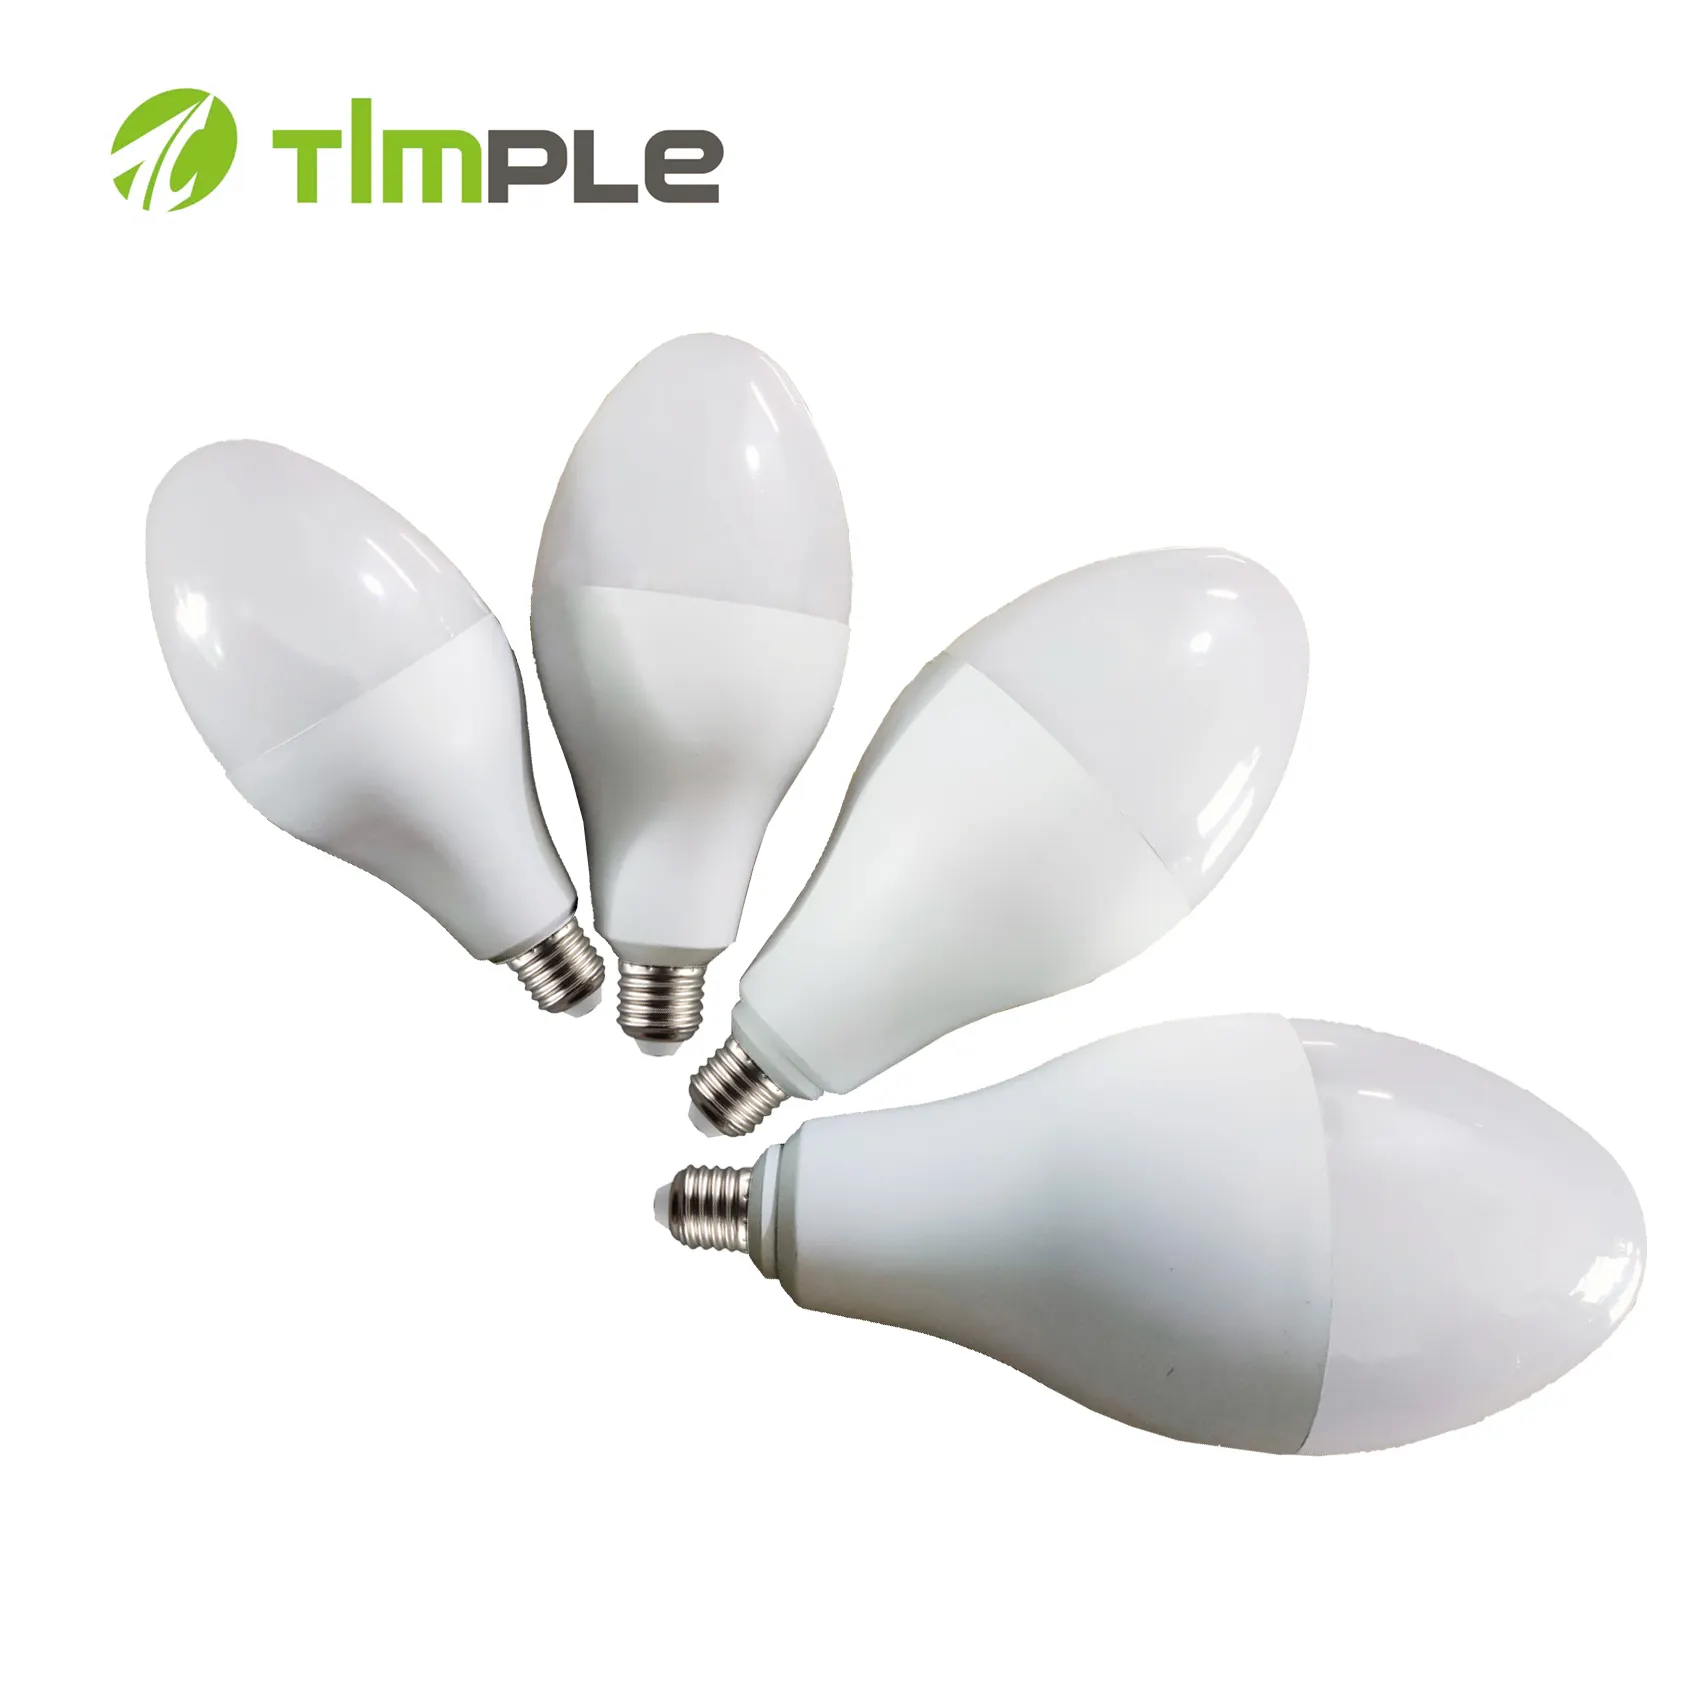 Timple 항주 뜨거운 상품 볼링 램프 높은 와트 LED 전구 20w 28w 35w 46w 일광 warmlight